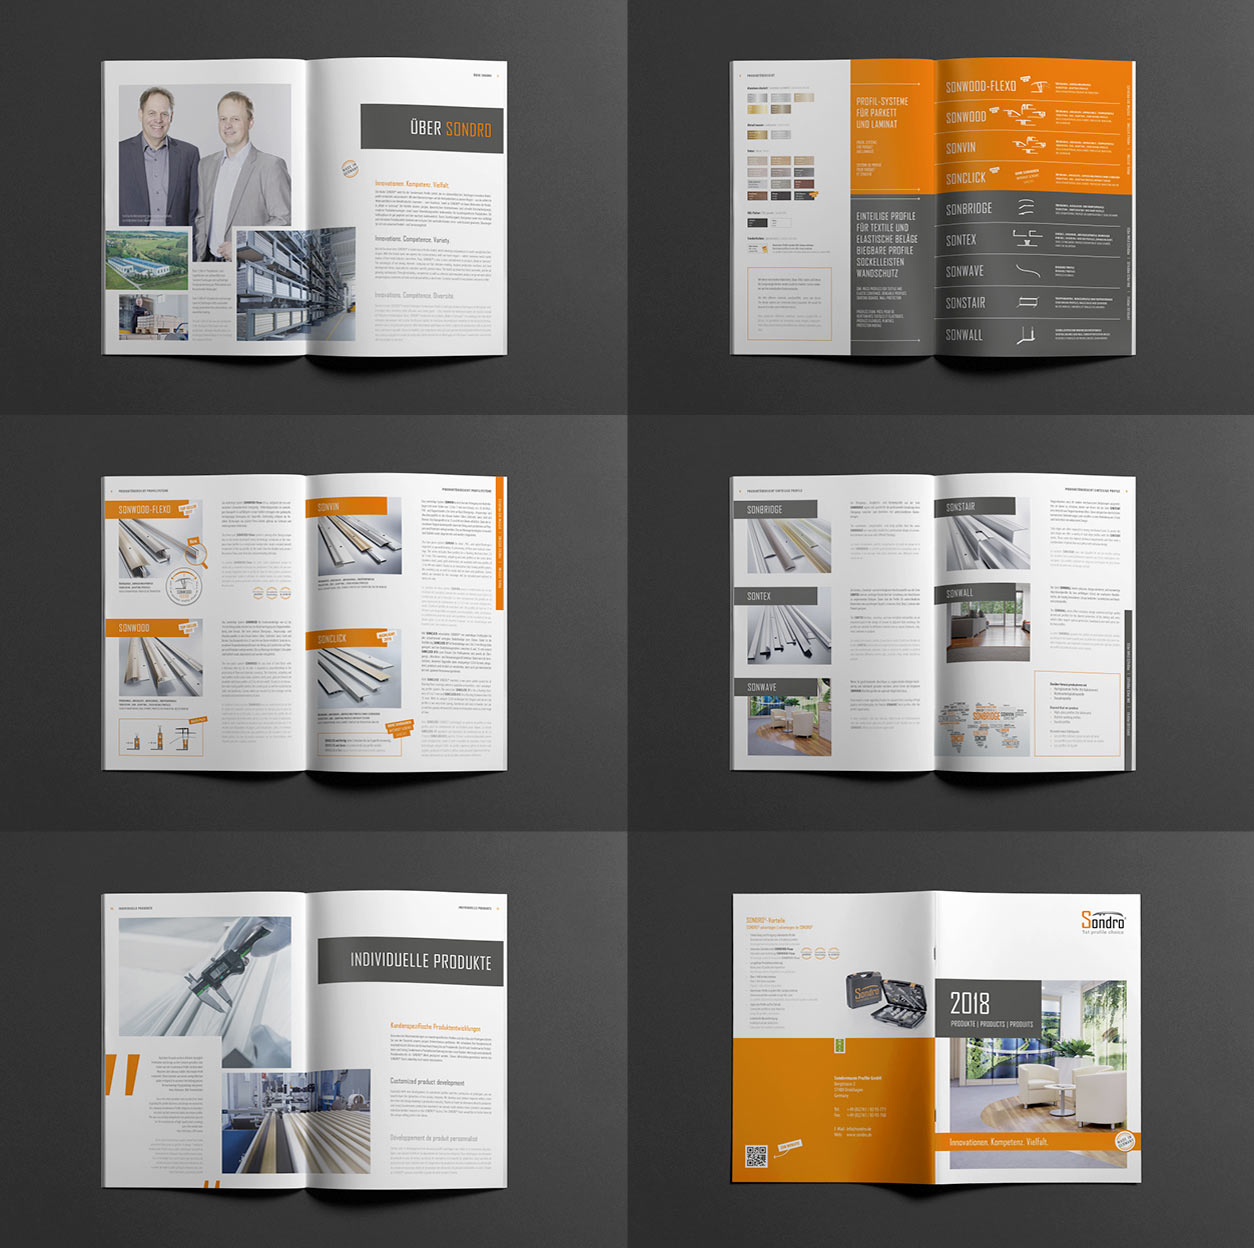 Produktbroschüre für Sondro, Konzept, Layout und Design Katharina Rasp | München